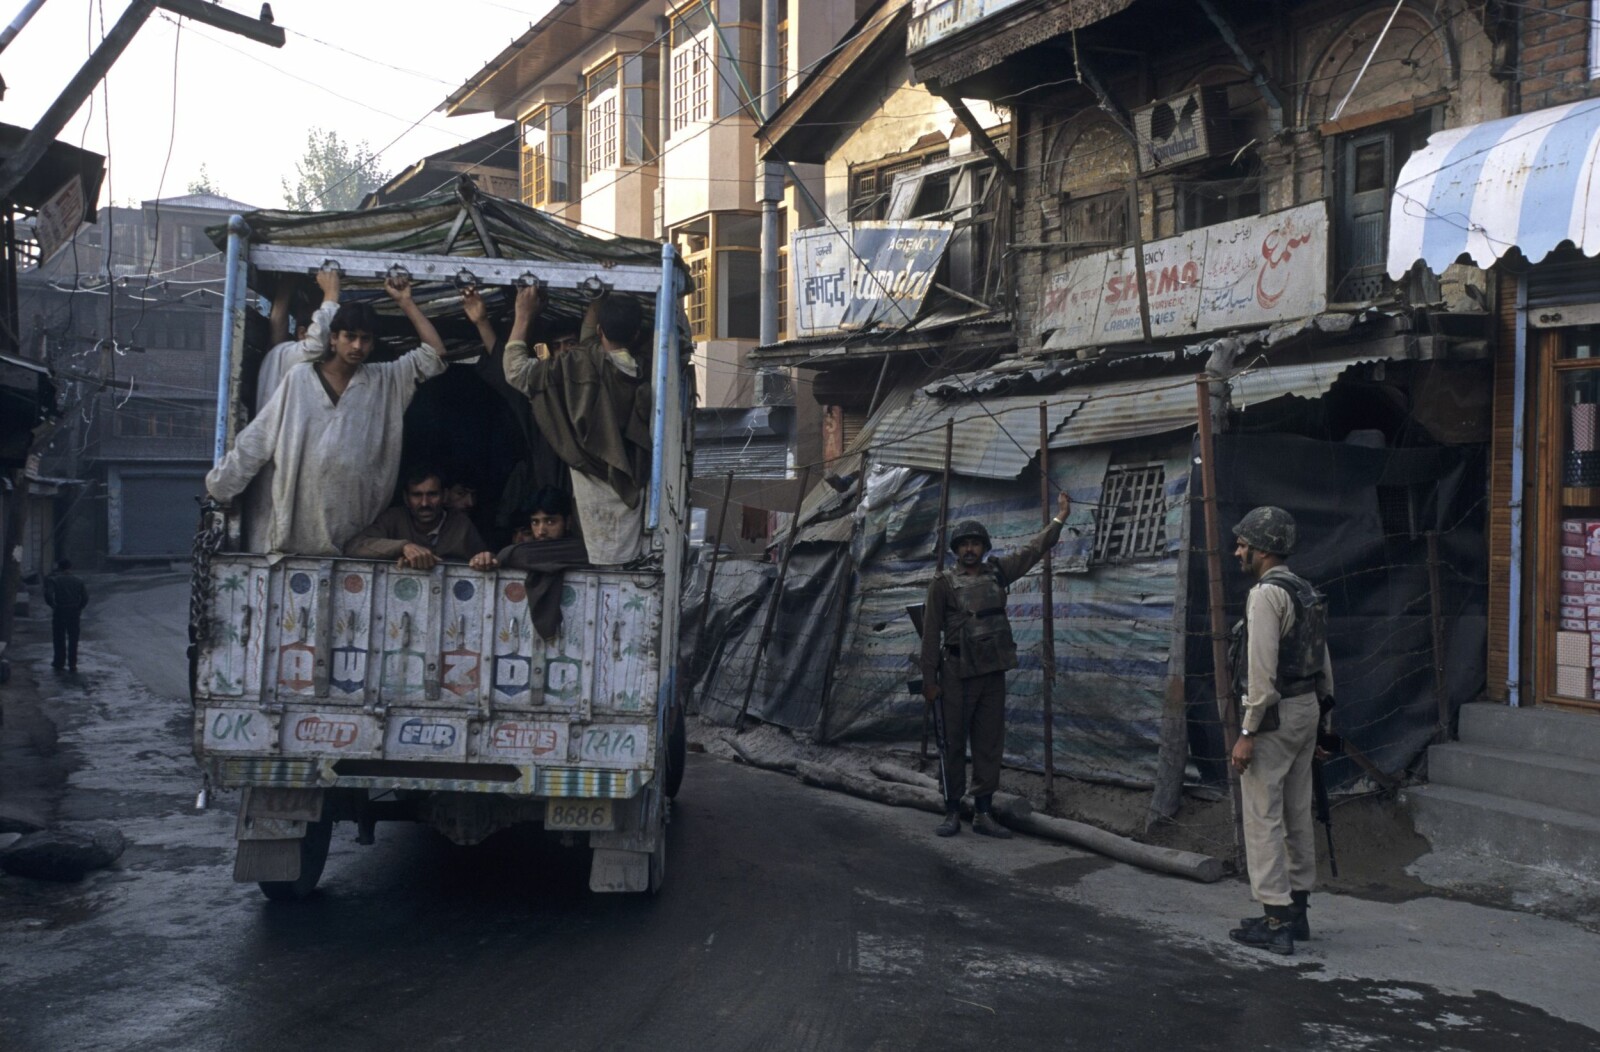 <span class=bold>PÅ VAKT</span> Soldater har overtatt for turister.Bildet er fra min reise i Kashmir tilbake i 2001. Den gang krydde det av soldater i byens gater.